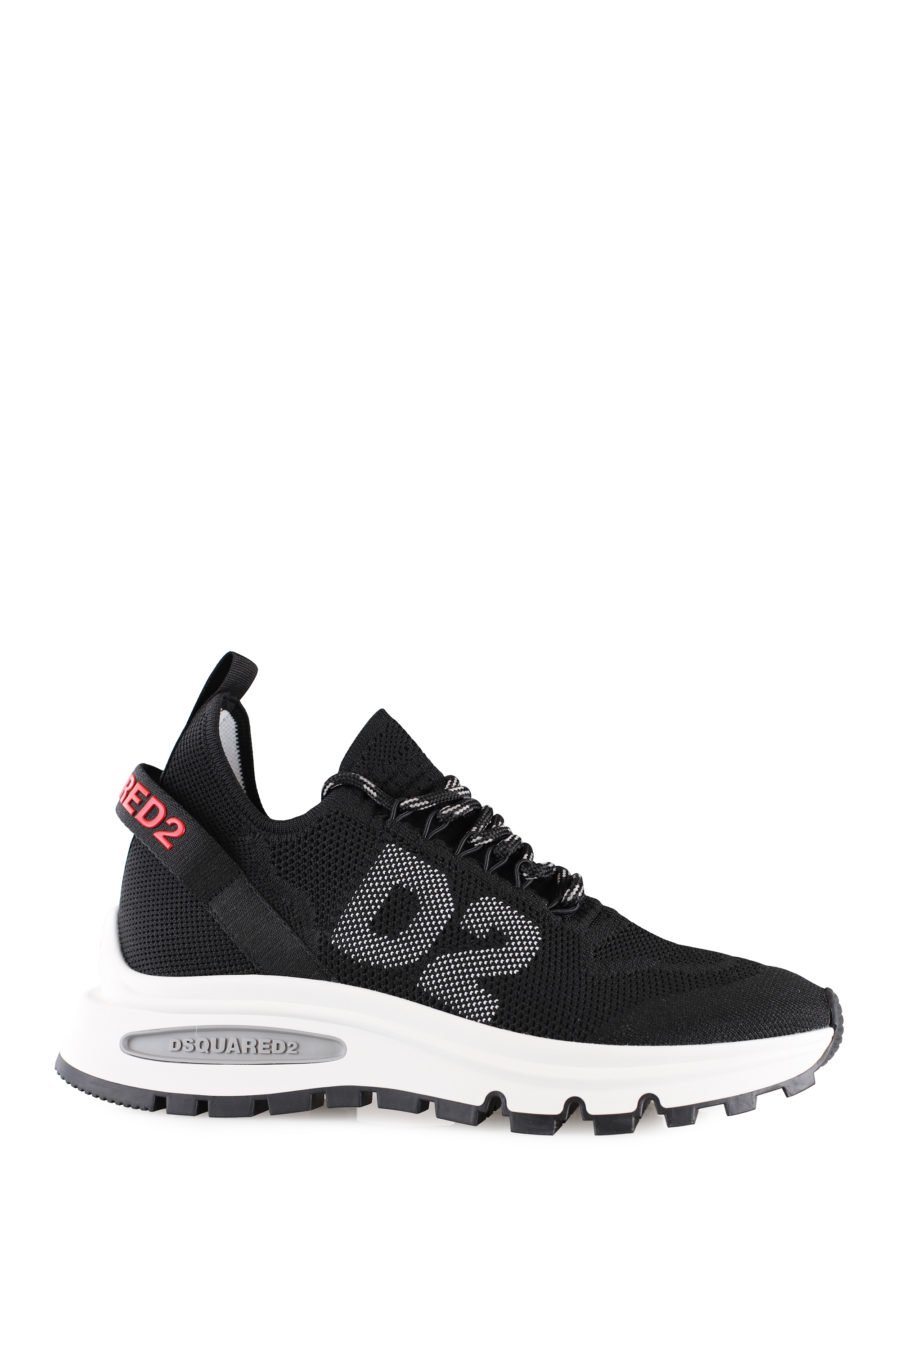 Zapatillas negras con logo pequeño rojo y "D2" - IMG 0005